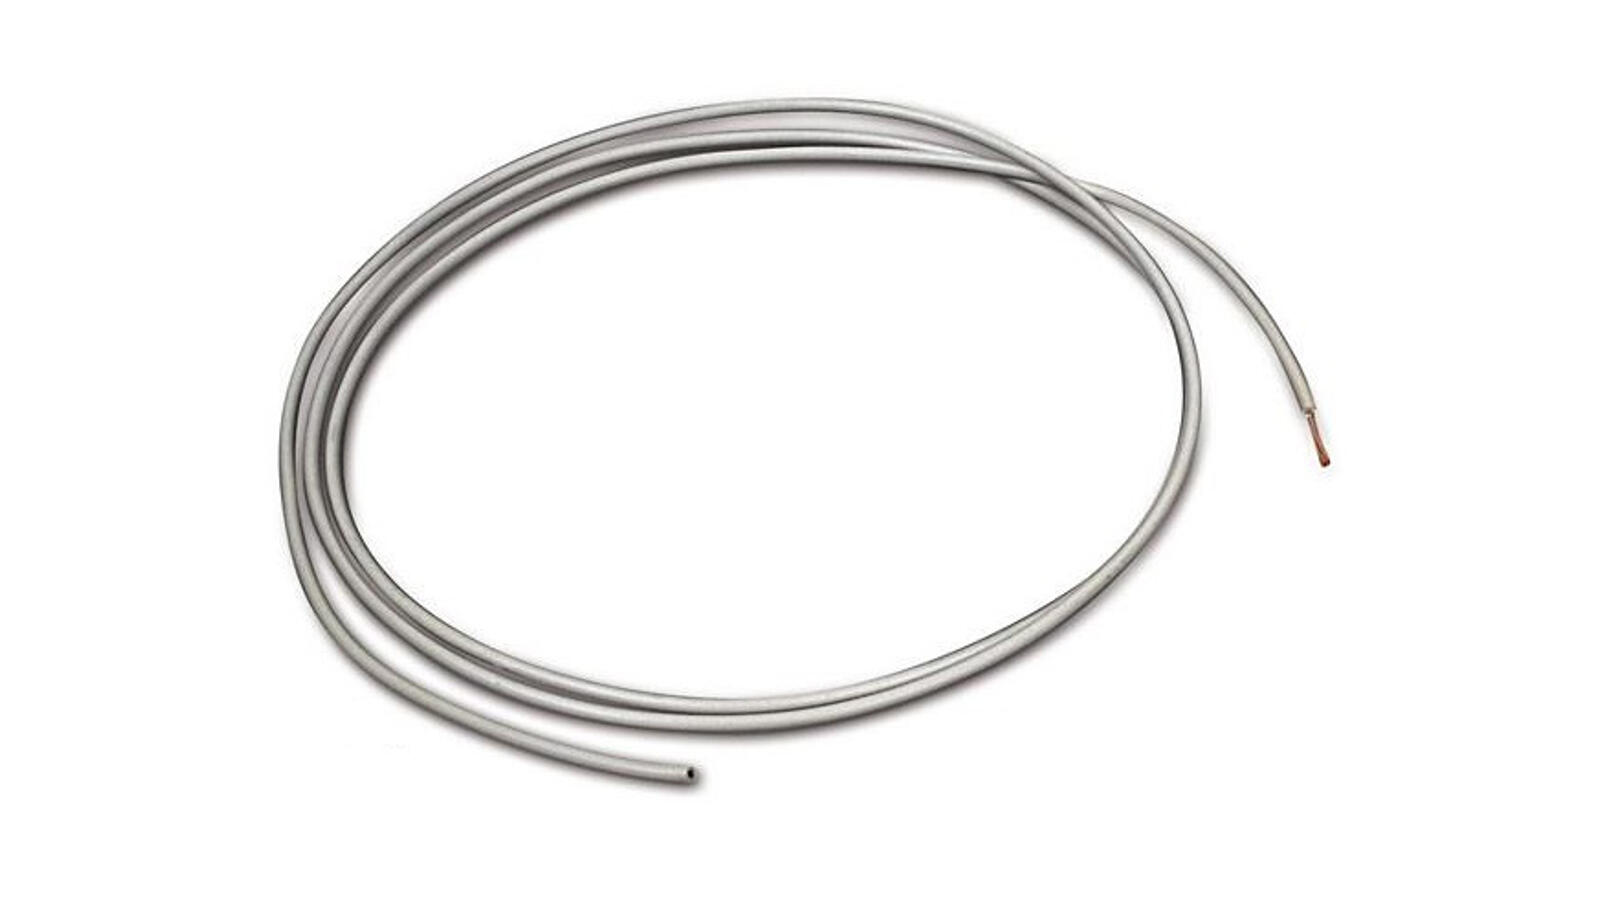 Kabel 1,5mm² 1m grau, 0,99 €